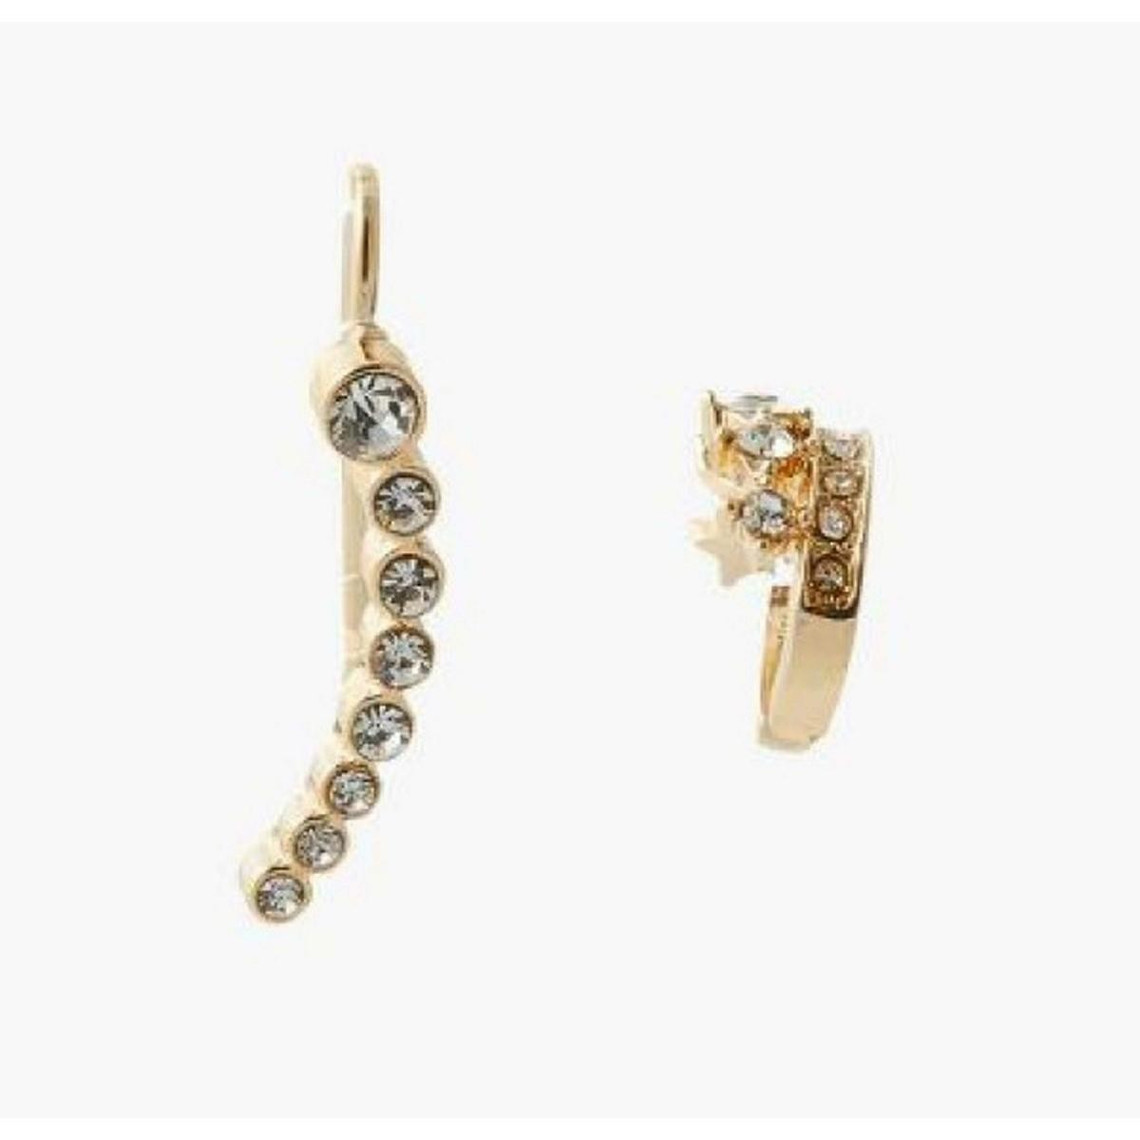 boucles d'oreilles femme balaboosté set de 2 bijoux d' oreilles avec strass - 3502456533790 métal doré